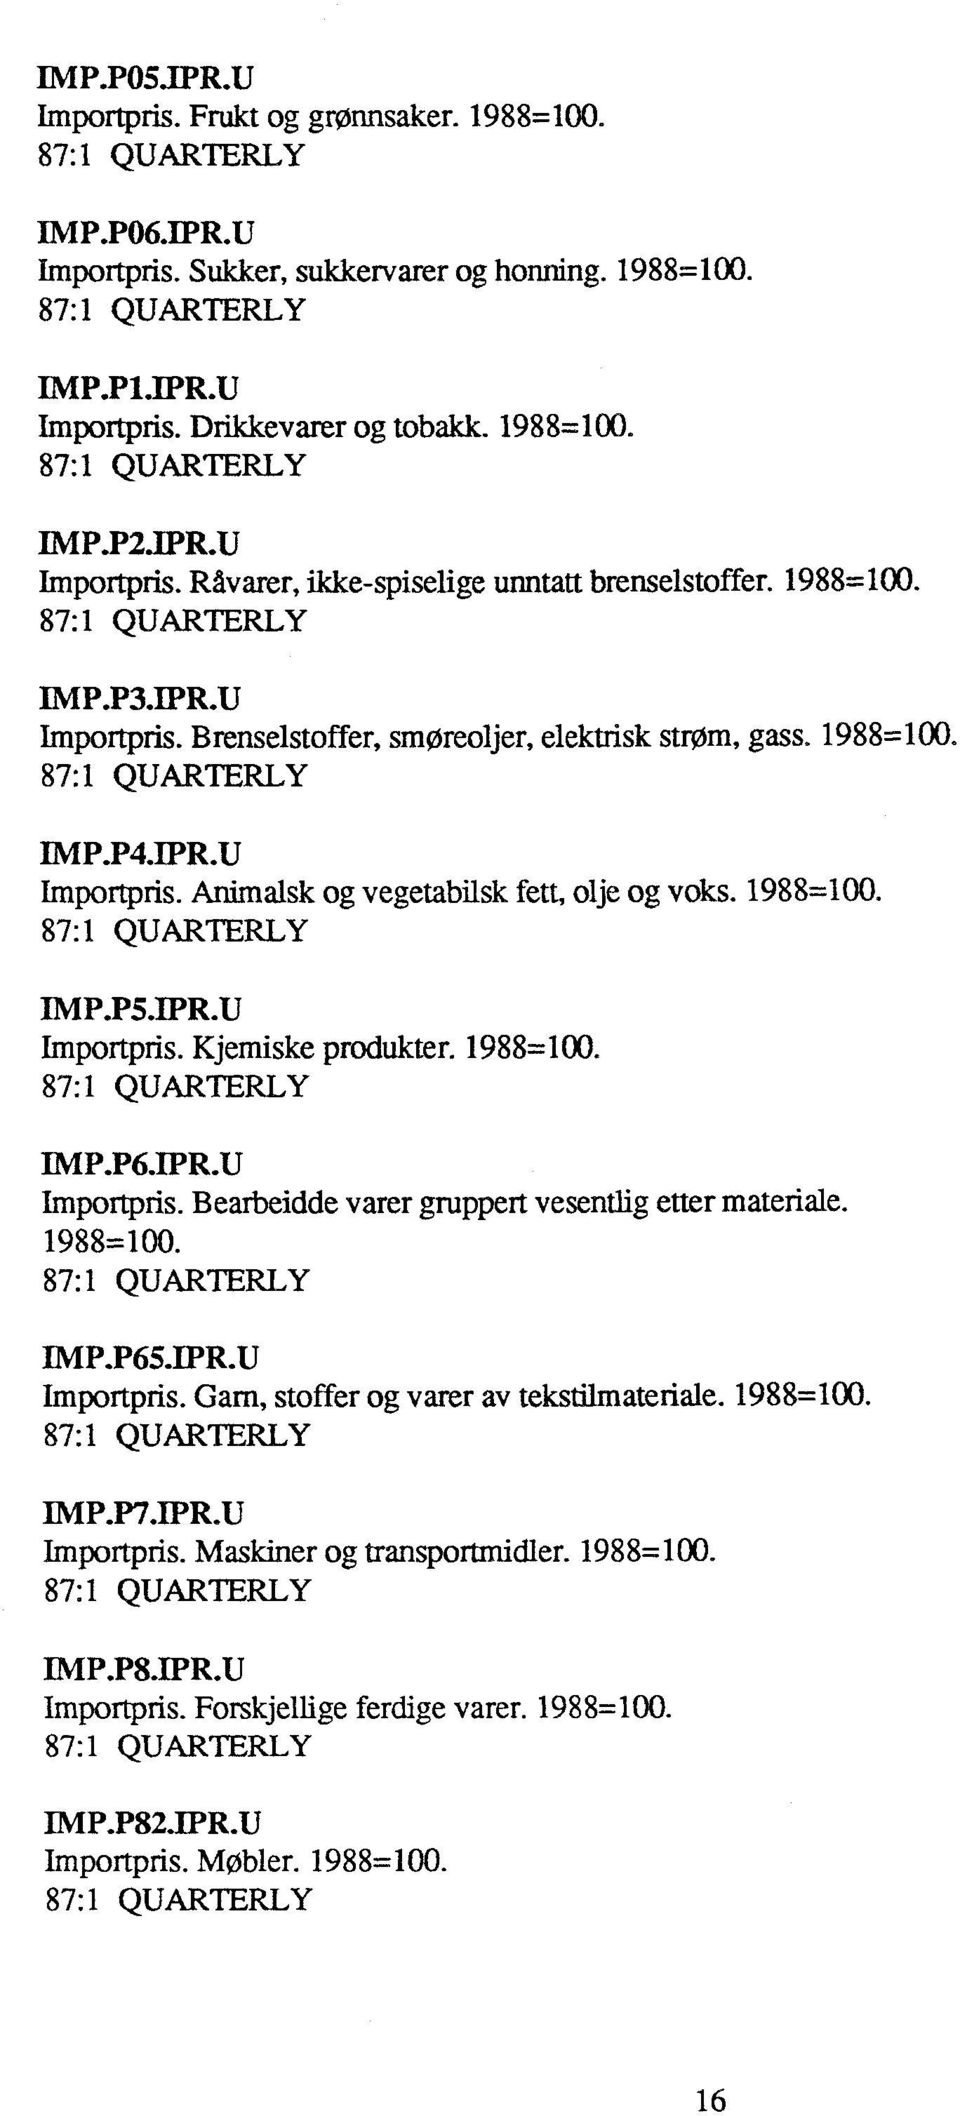 1988=100. IMP.P6.1PR.0 Importpris. Bearbeidde varer gruppert vesentlig etter materiale. 1988=100. INIP.P65.1PR.0 Importpris. Garn, stoffer og varer av tekstilmateriale. 1988=100. IMP.P7.IPR.